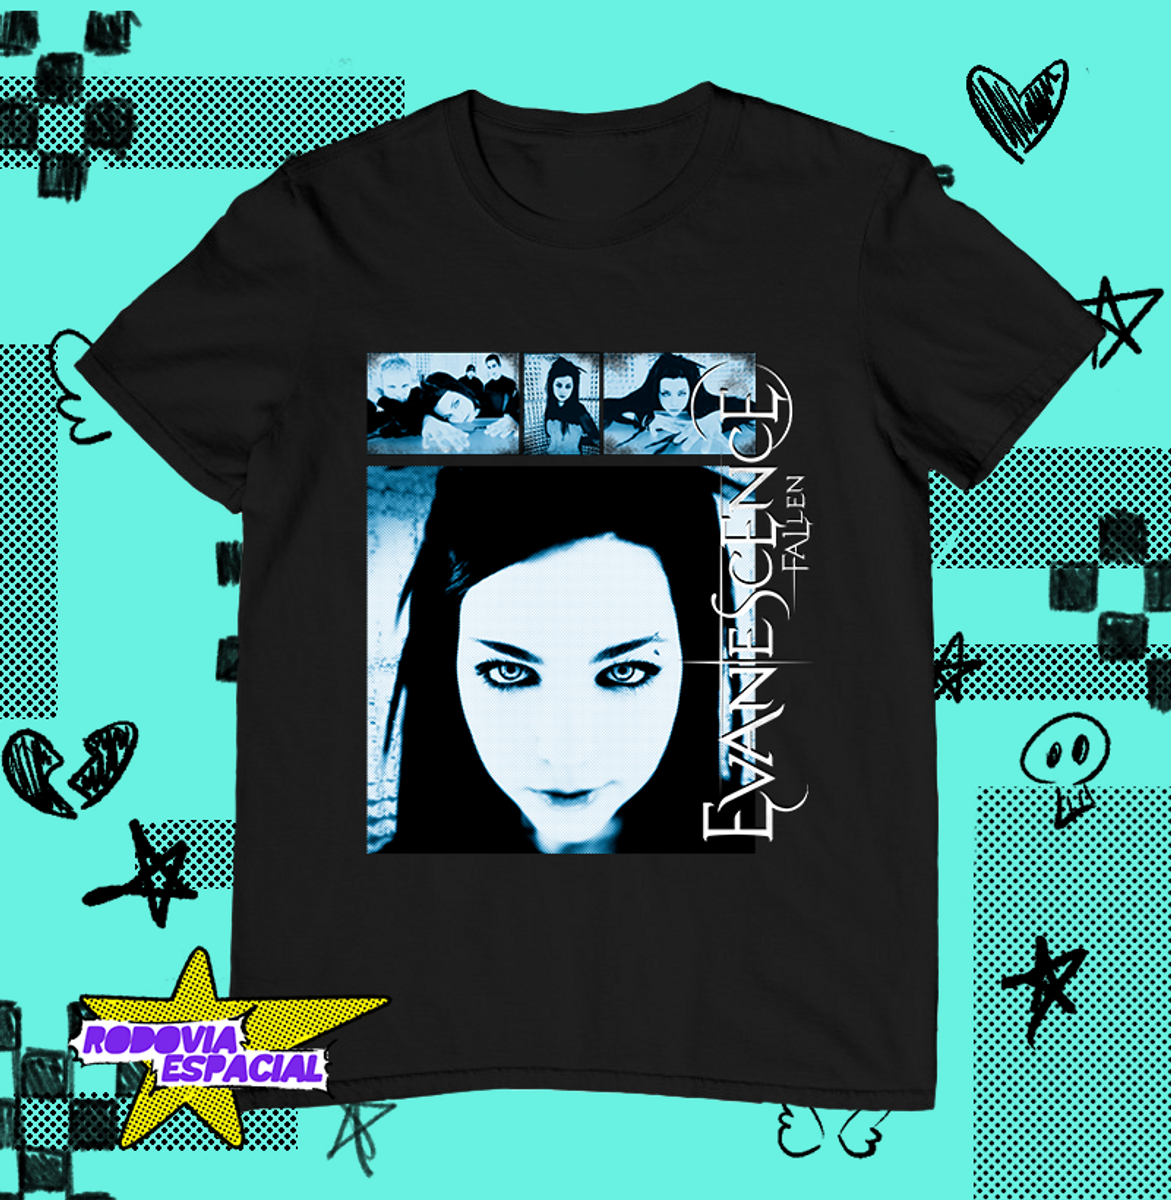 Nome do produto: Camiseta Fallen - Evanescence